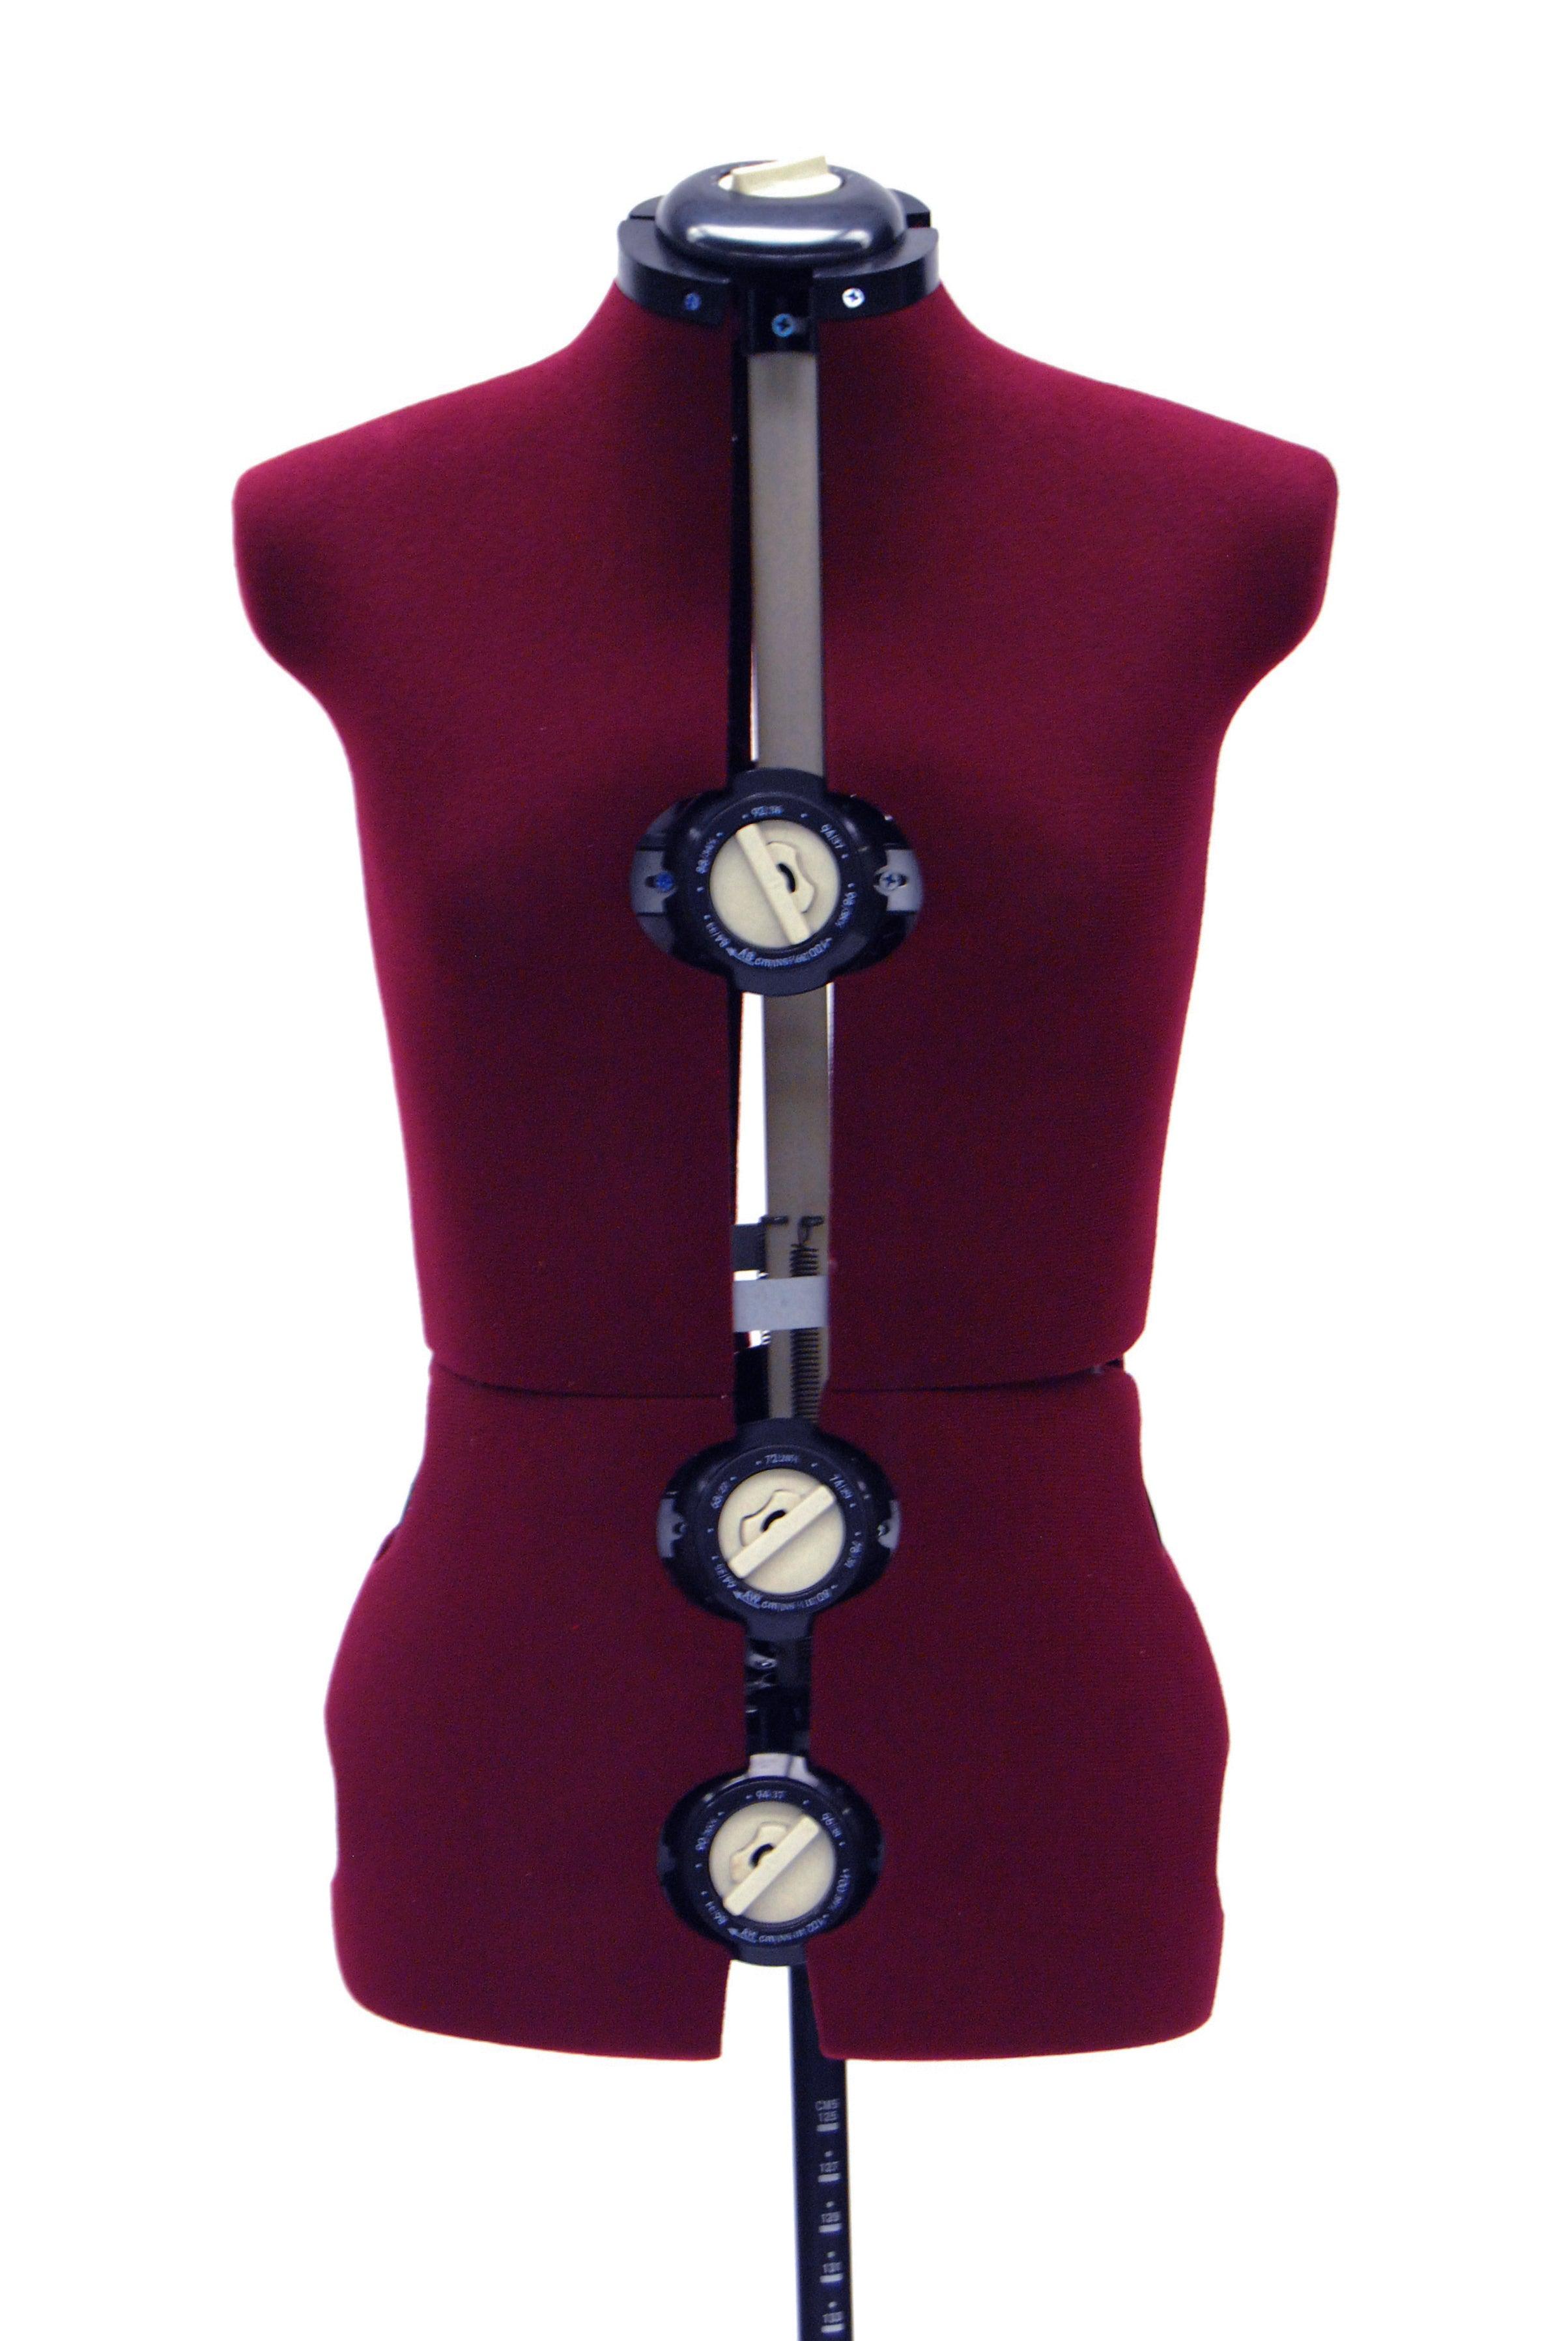 Female Large Adjustable Dress Form MM-JFFH8